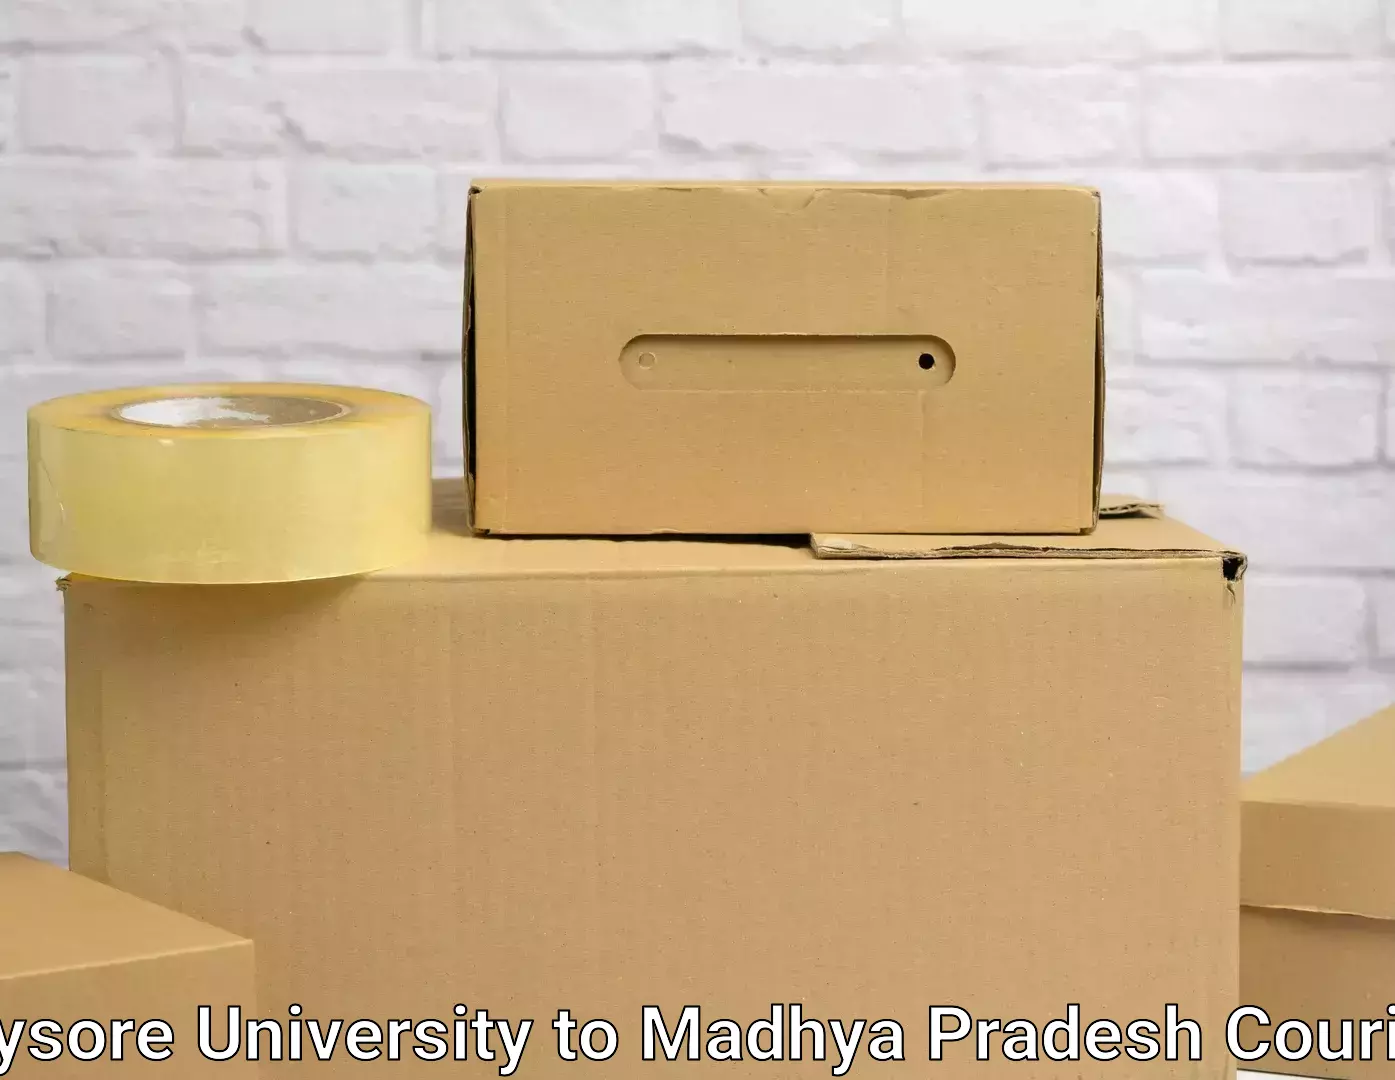 Full-service furniture transport Mysore University to Katangi